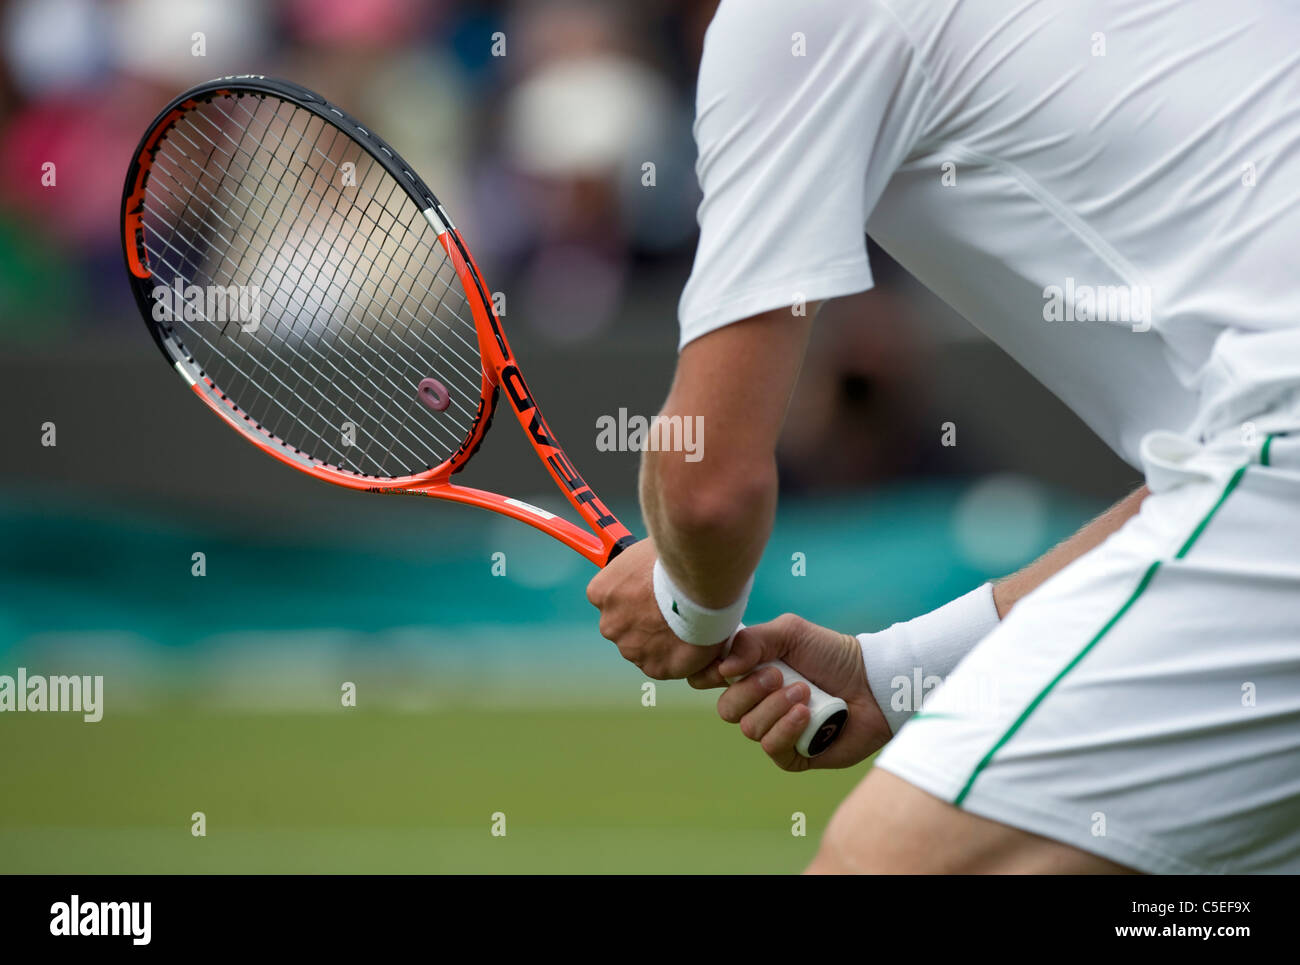 Player holding racket détails au cours de l'édition 2011 des Championnats de tennis de Wimbledon Banque D'Images